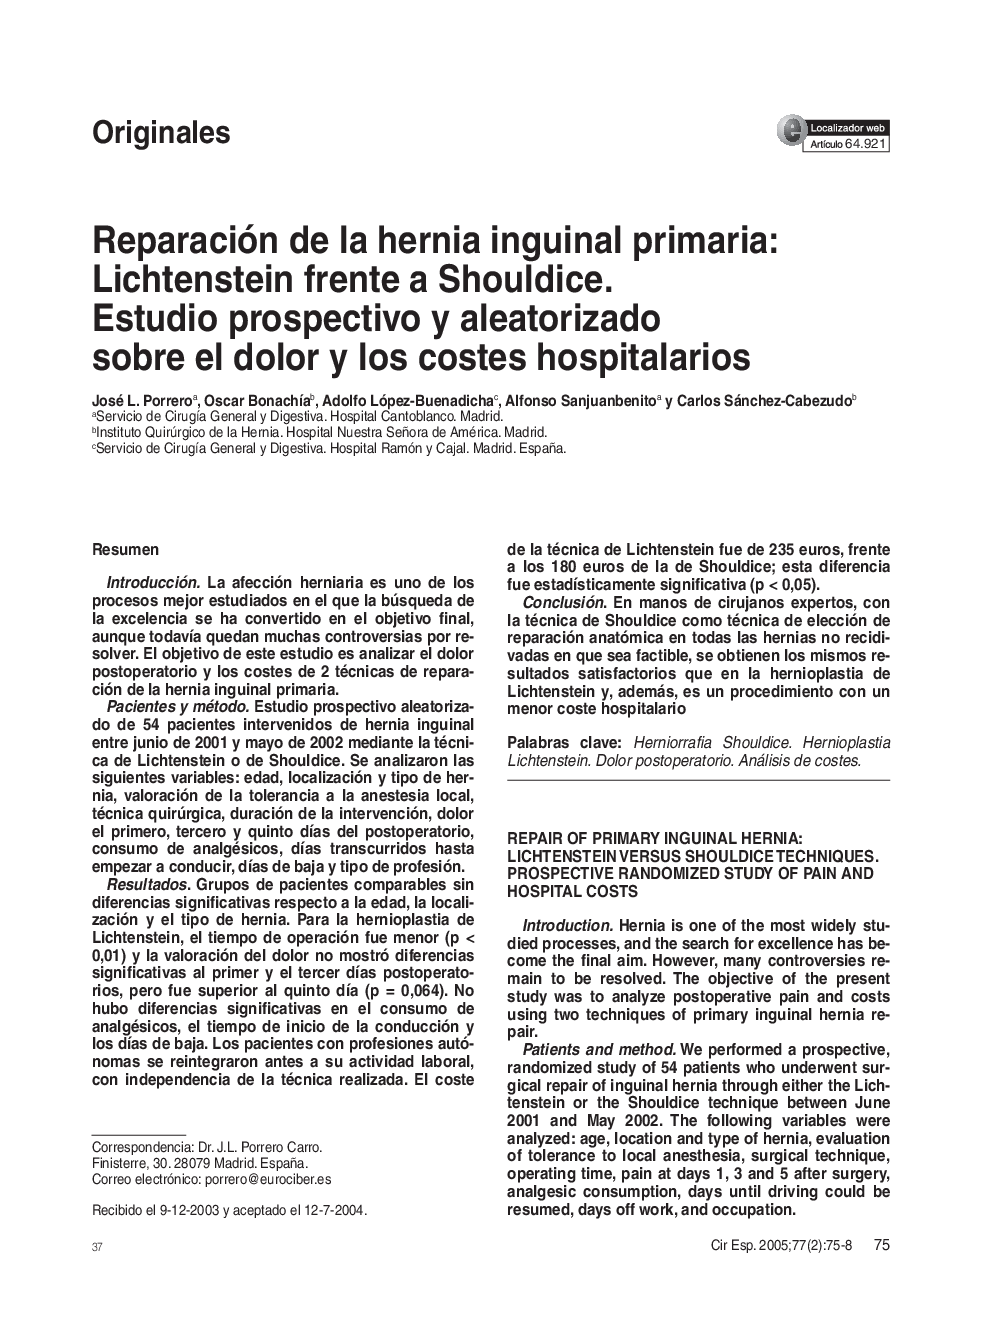 Reparación de la hernia inguinal primaria: Lichtenstein frente a Shouldice. Estudio prospectivo y aleatorizado sobre el dolor y los costes hospitalarios